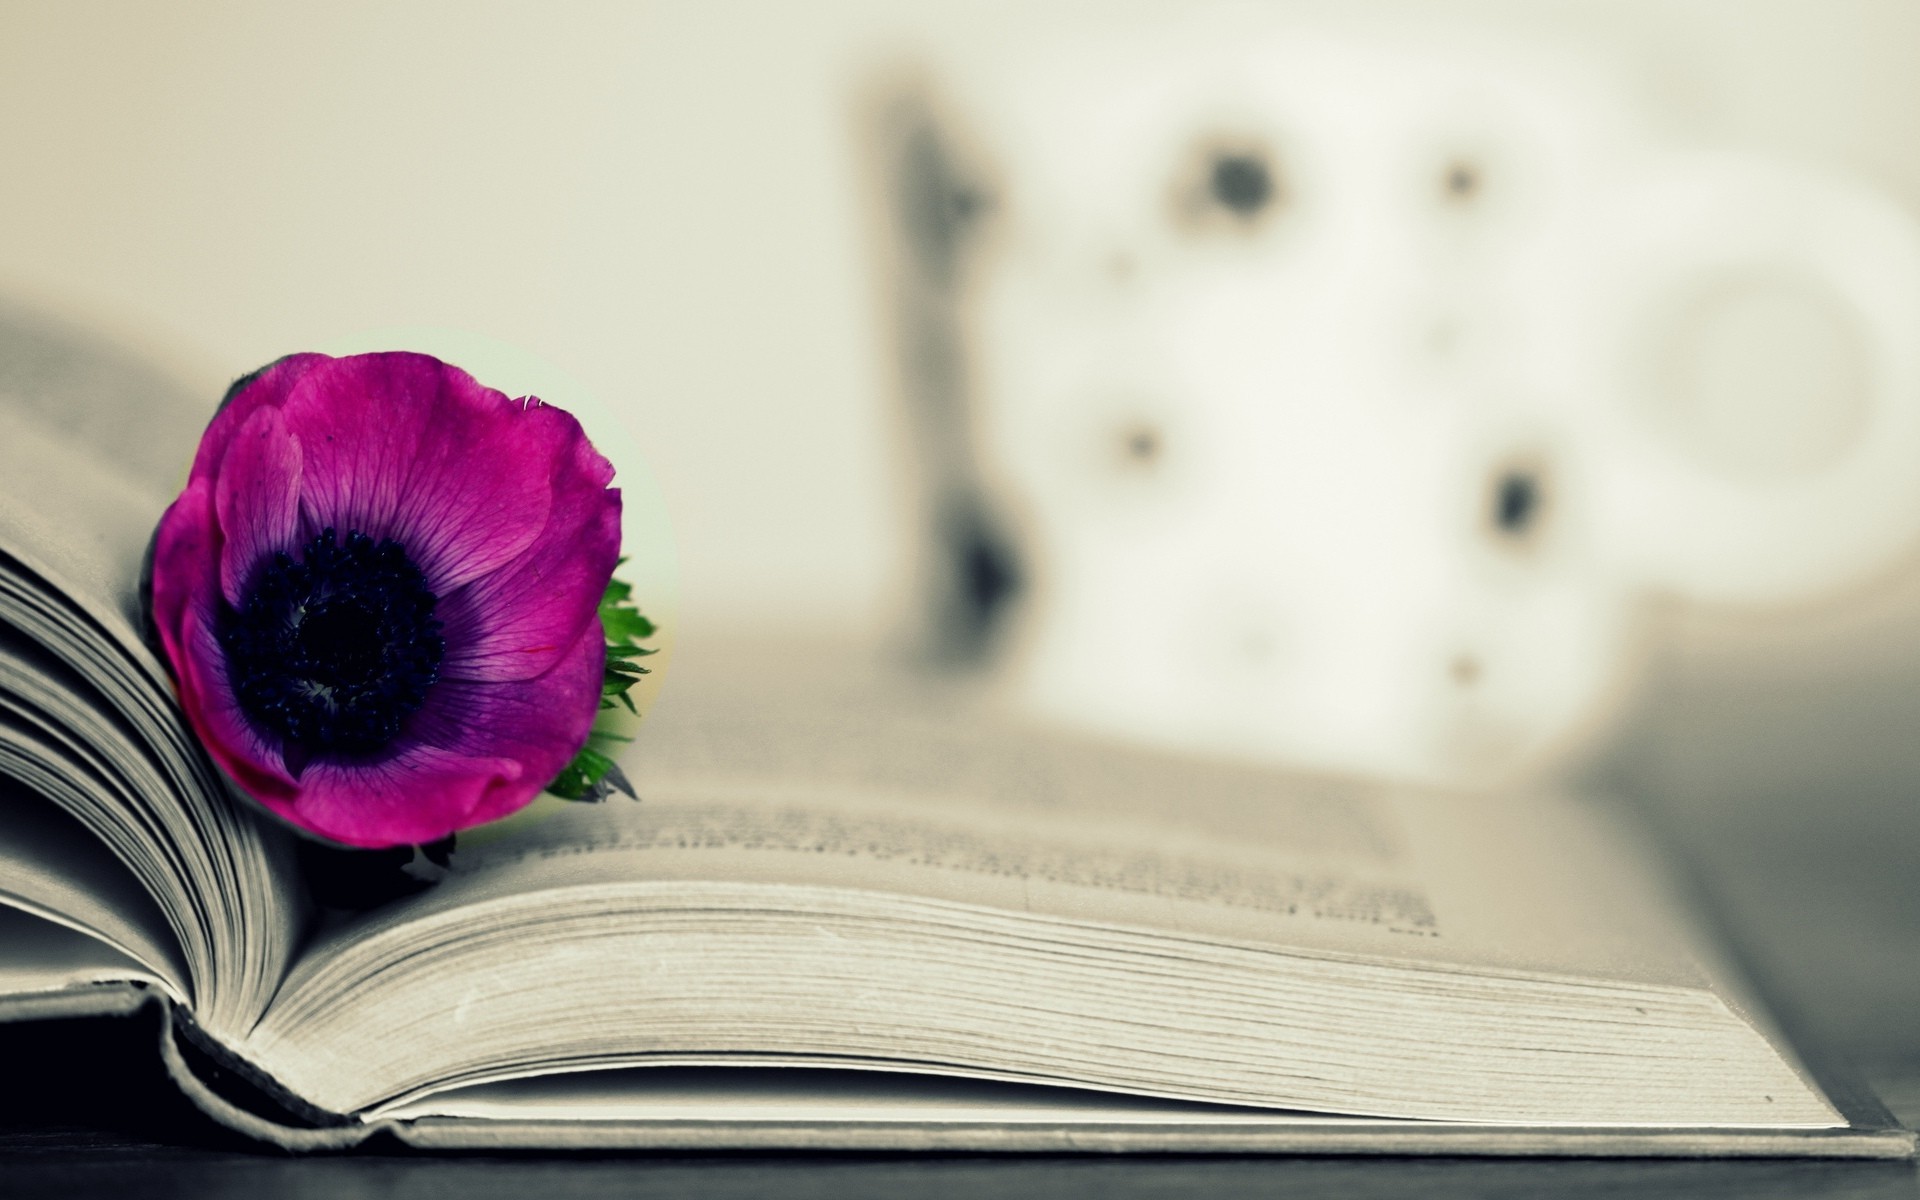 Сиреневый цветок в книге